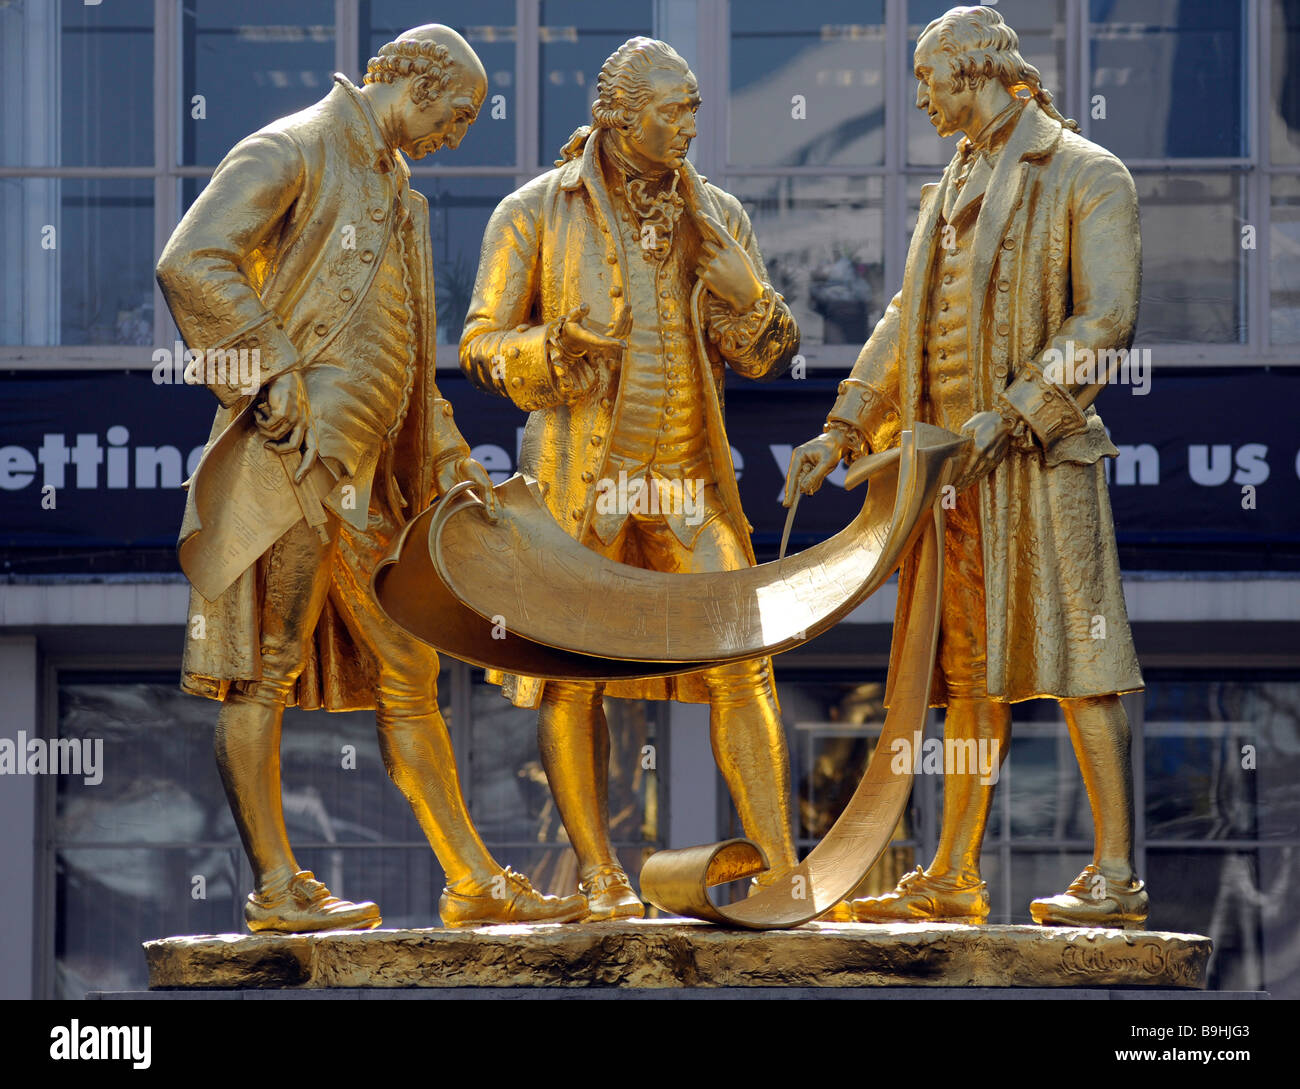 Vergoldete Statue von l bis R Matthew Boulton, James Watt und William Murdock steht in Broad Street, Birmingham (Stadtzentrum). Stockfoto